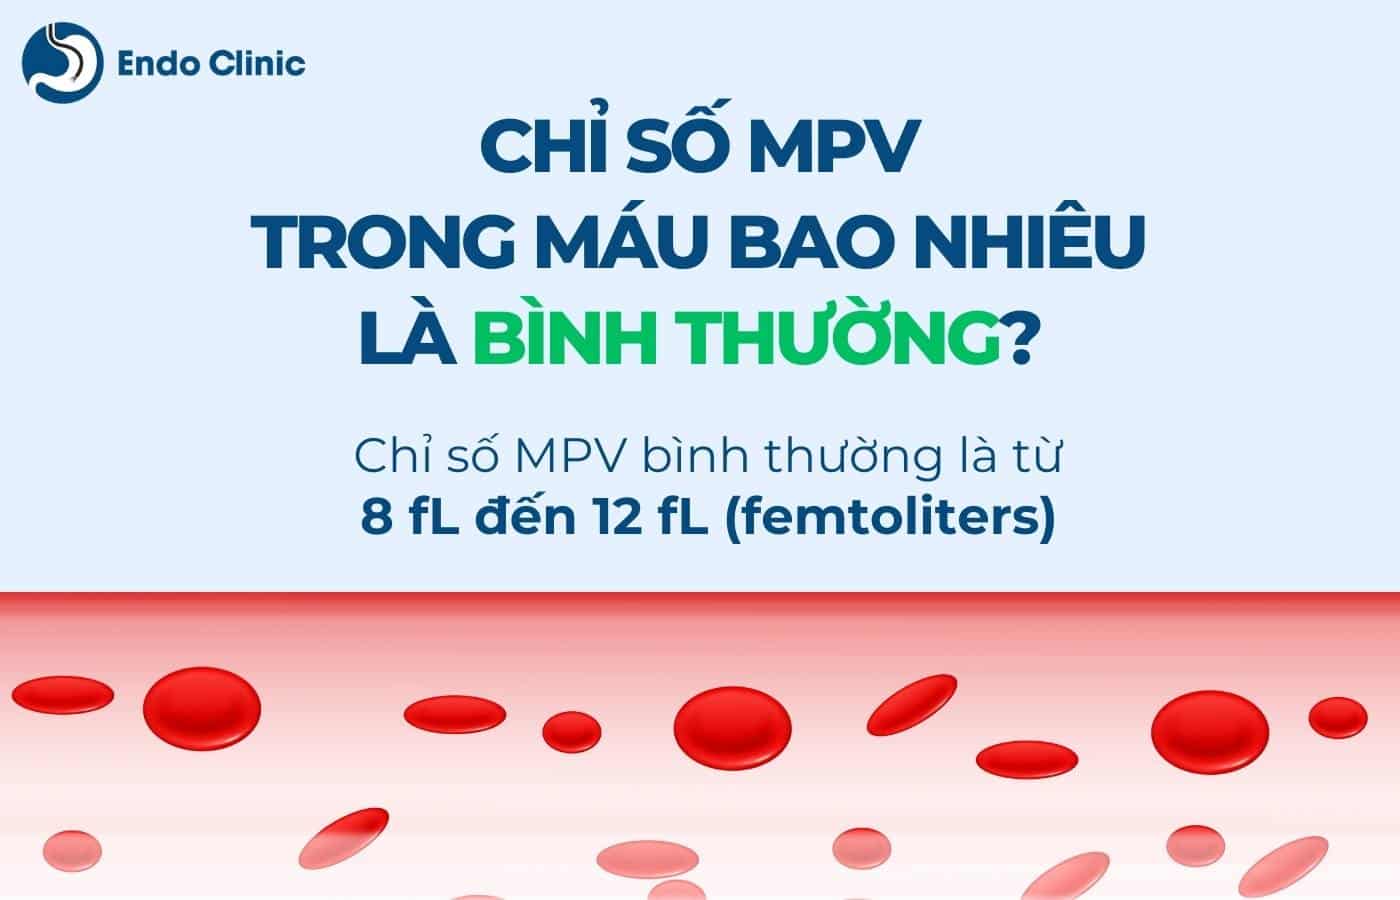 Chỉ số MPV trong xét nghiệm máu bình thường là bao nhiêu?